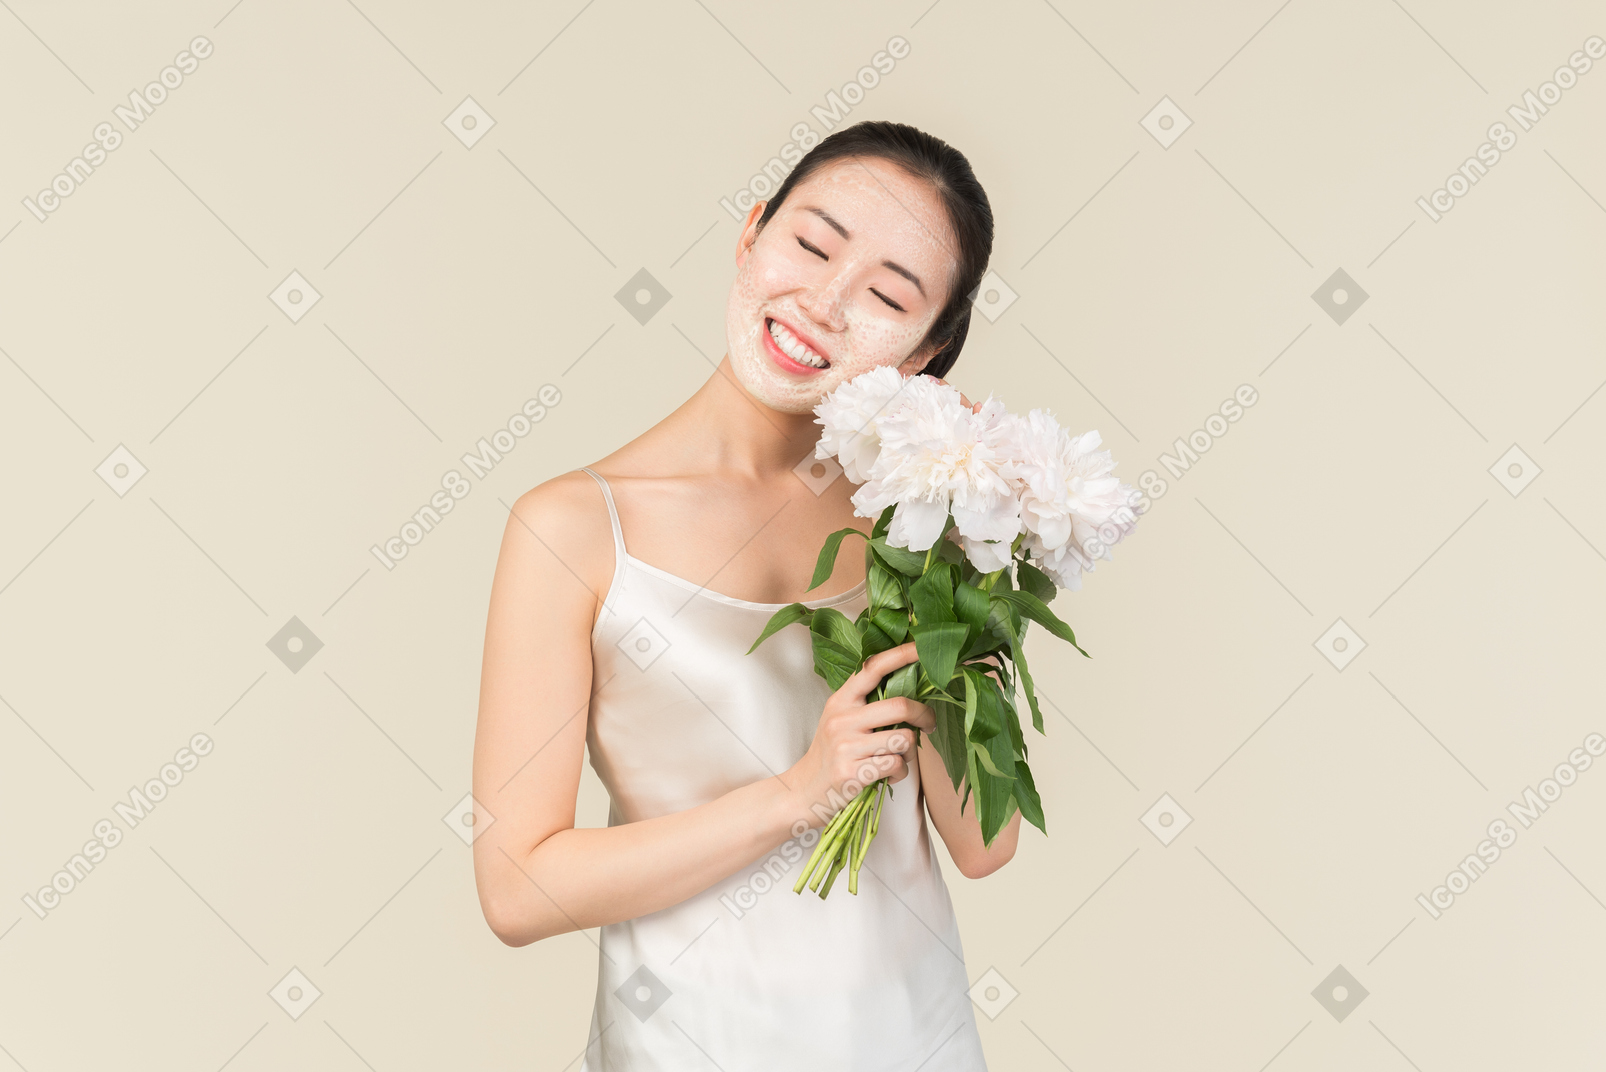 有面部面具的梦想的年轻亚裔妇女在拿着花